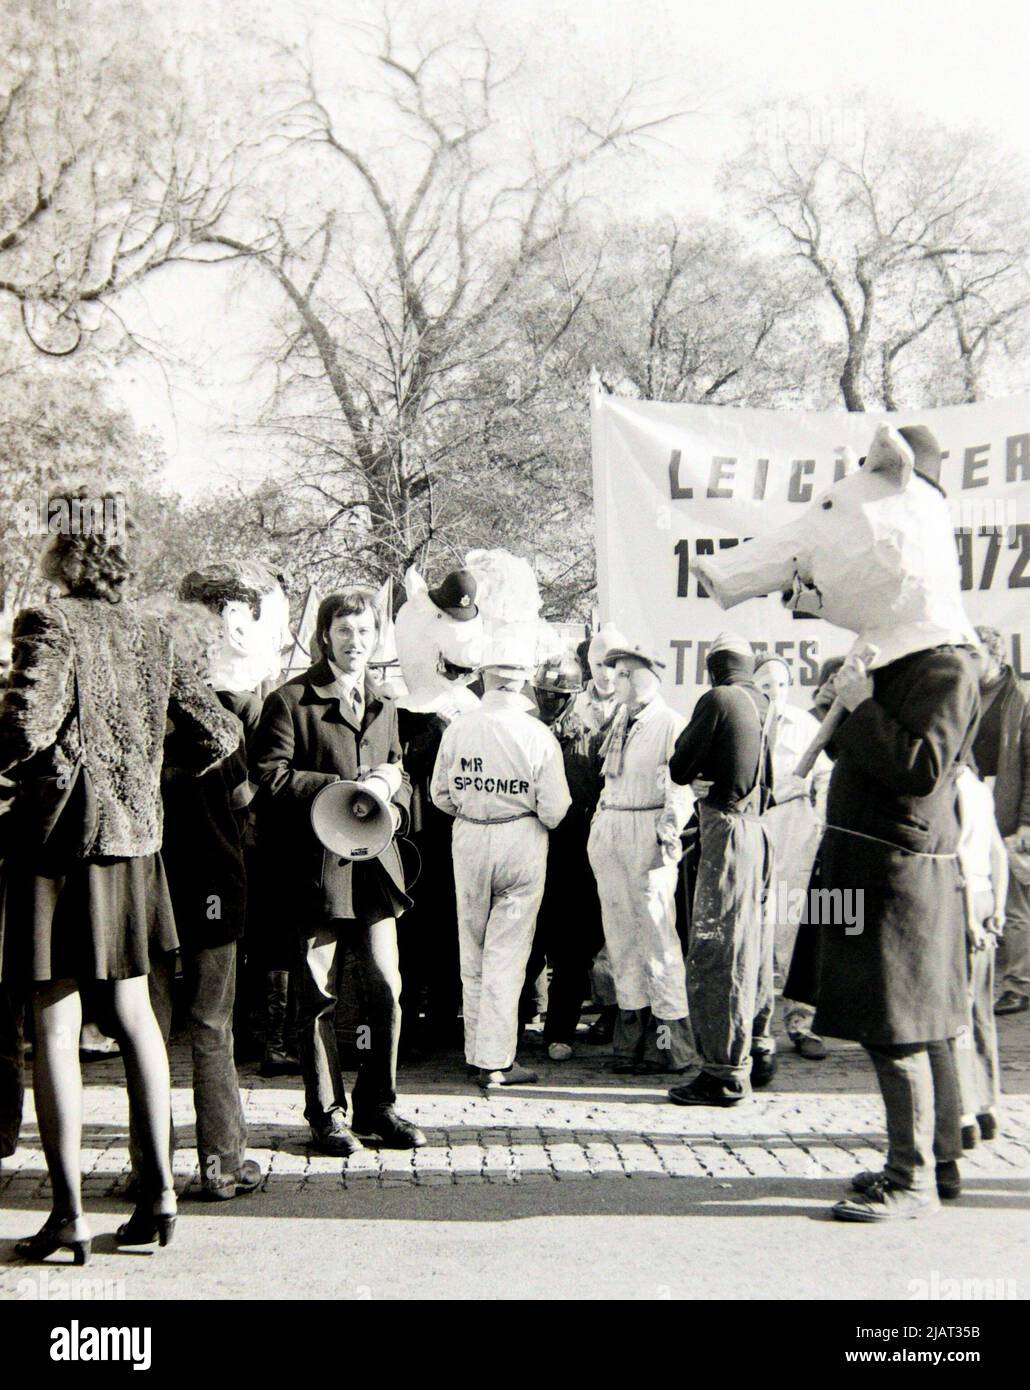 I manifestanti, alcuni dei quali hanno una bandiera della zona di Leicester, partecipano a una manifestazione contro il razzismo a Leicester, Inghilterra, Regno Unito, Isole britanniche, nel 1972. Foto Stock